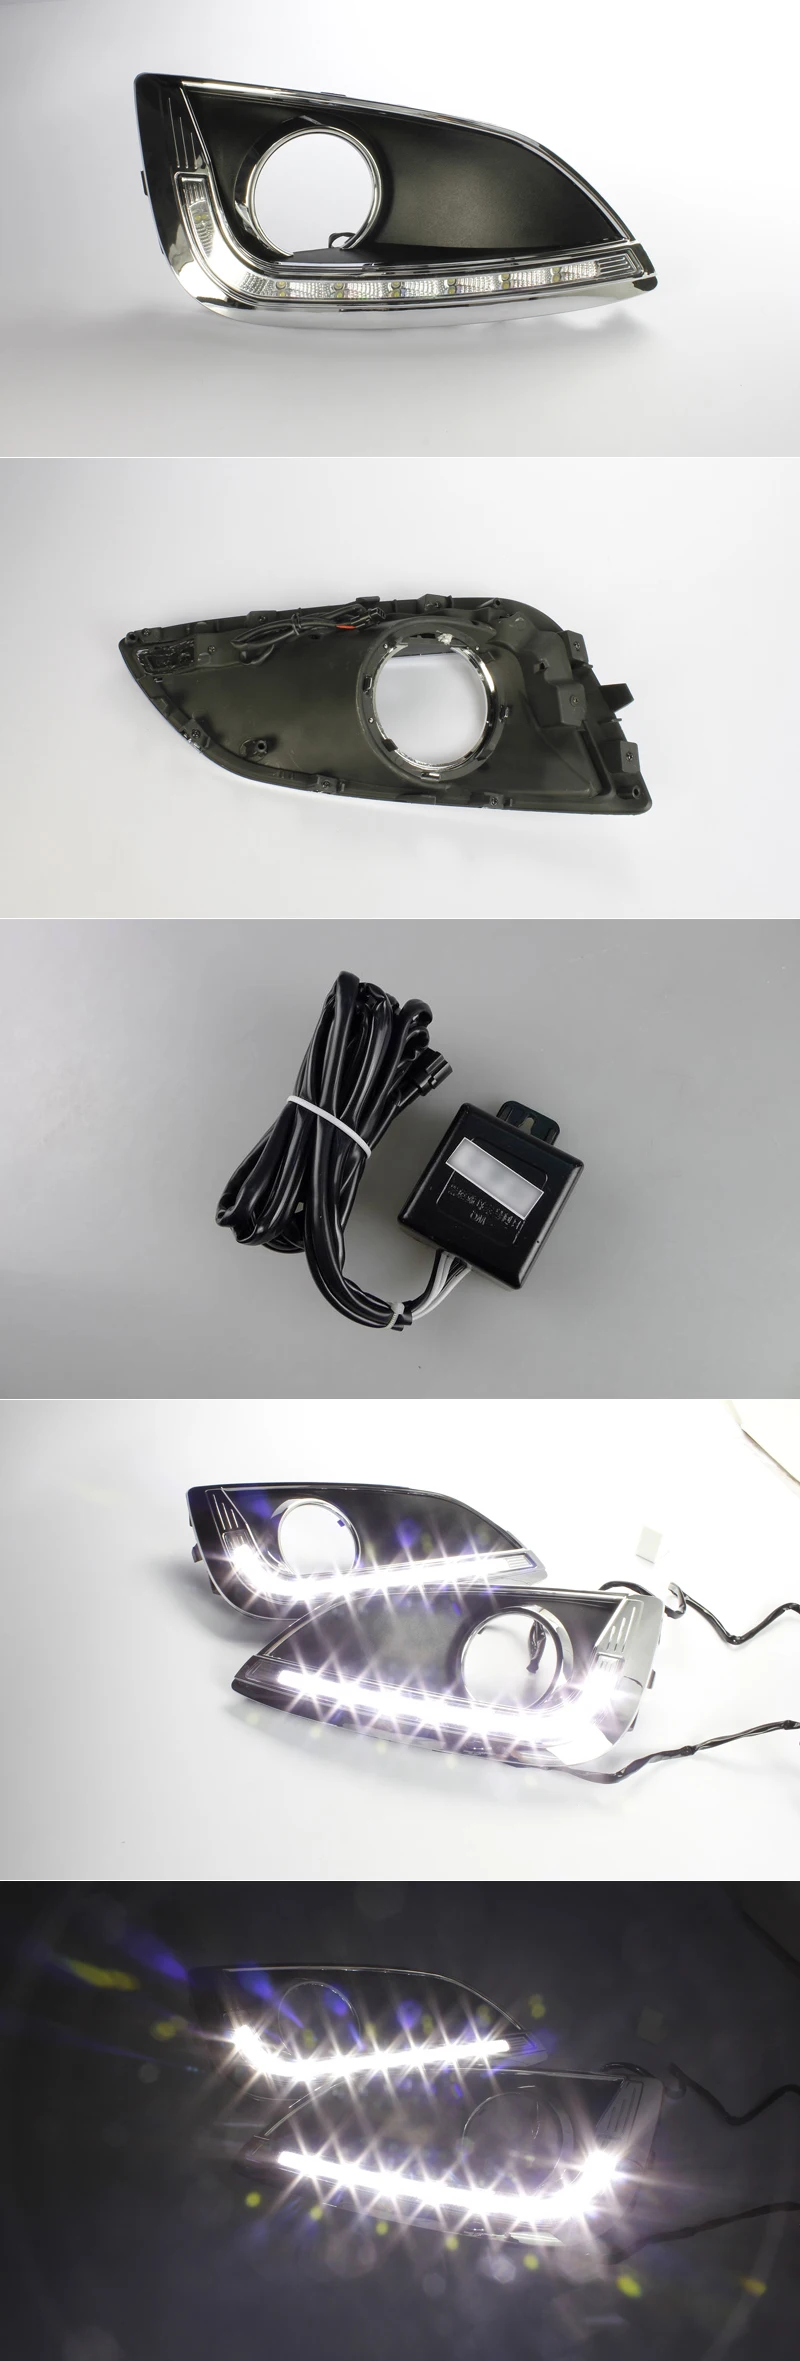 Для hyundai IX35 2010 2011 2012 дневной ходовой светильник с отверстием для противотуманной фары SNCN супер яркость водонепроницаемый ABS автомобиль DRL светодиодный